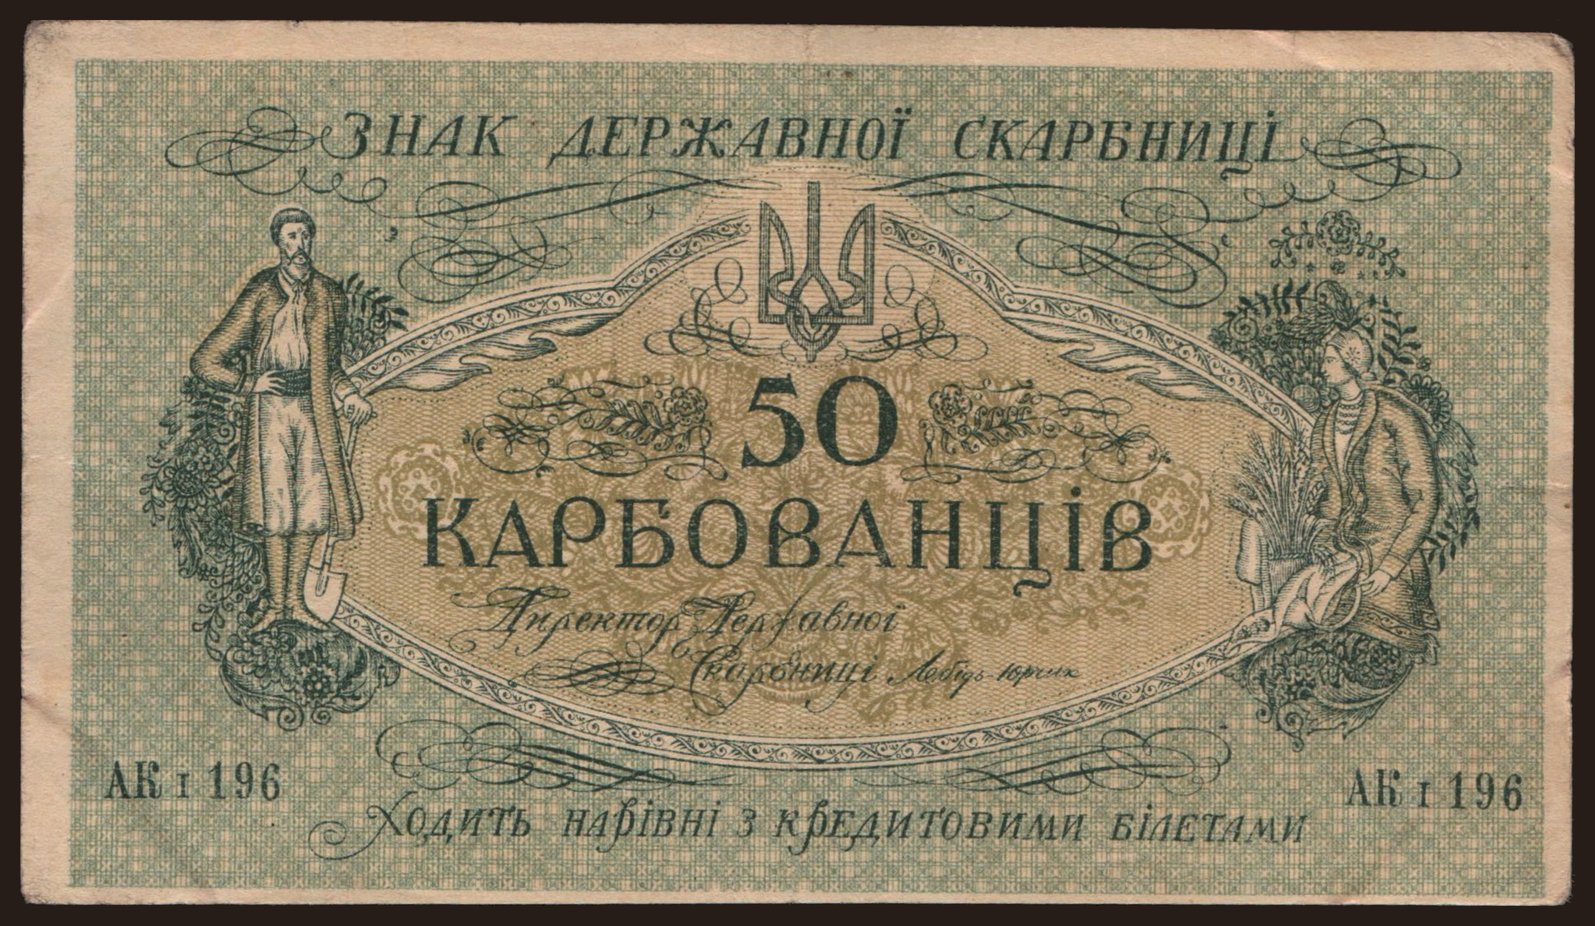 50 karbovantsiv, 1918